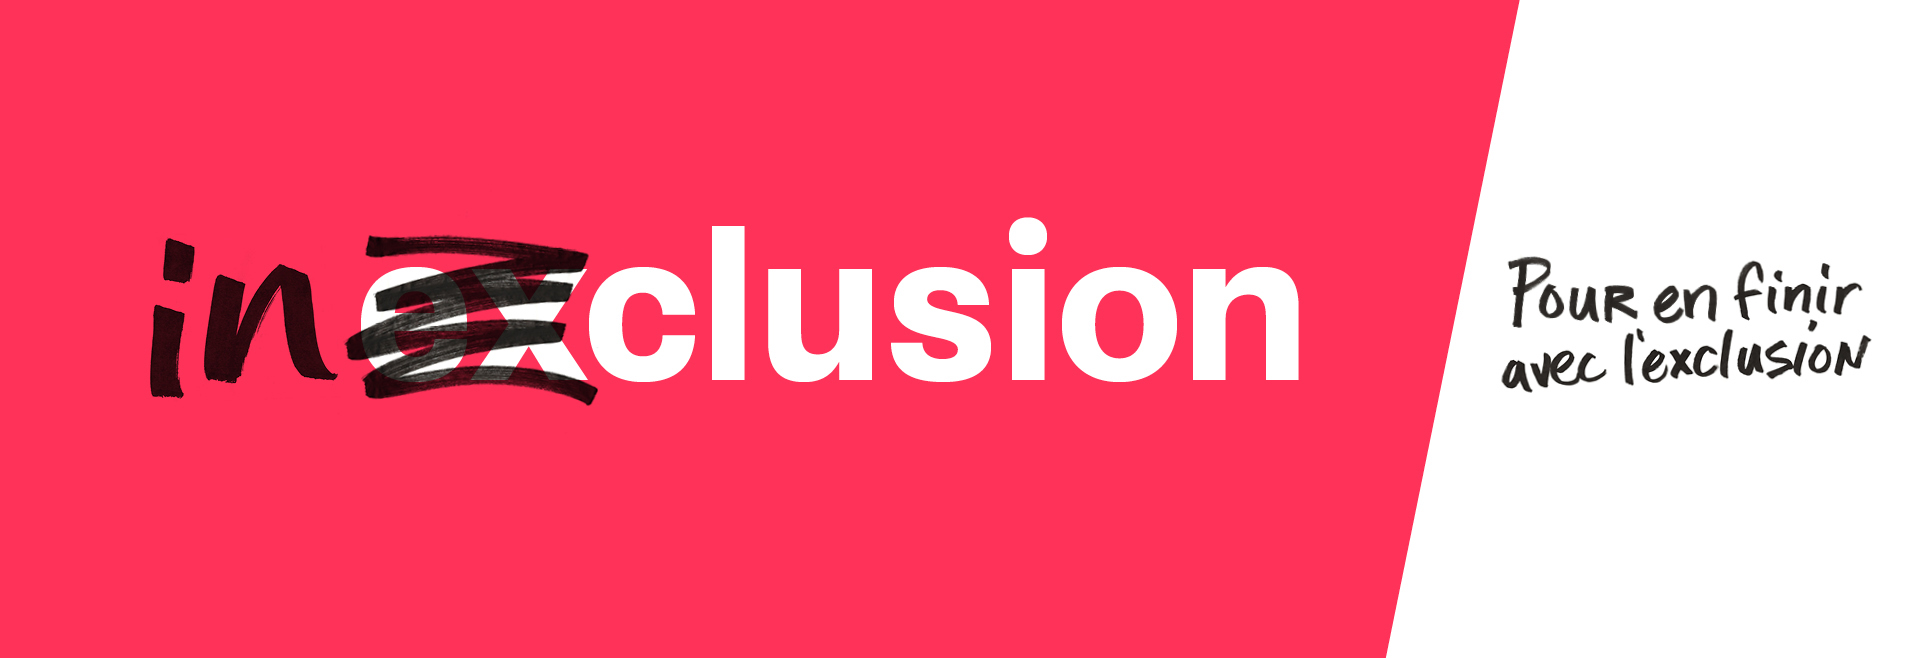 Mission-inclusion_pour-en-finir-avec-lexclusion_img_2.jpg